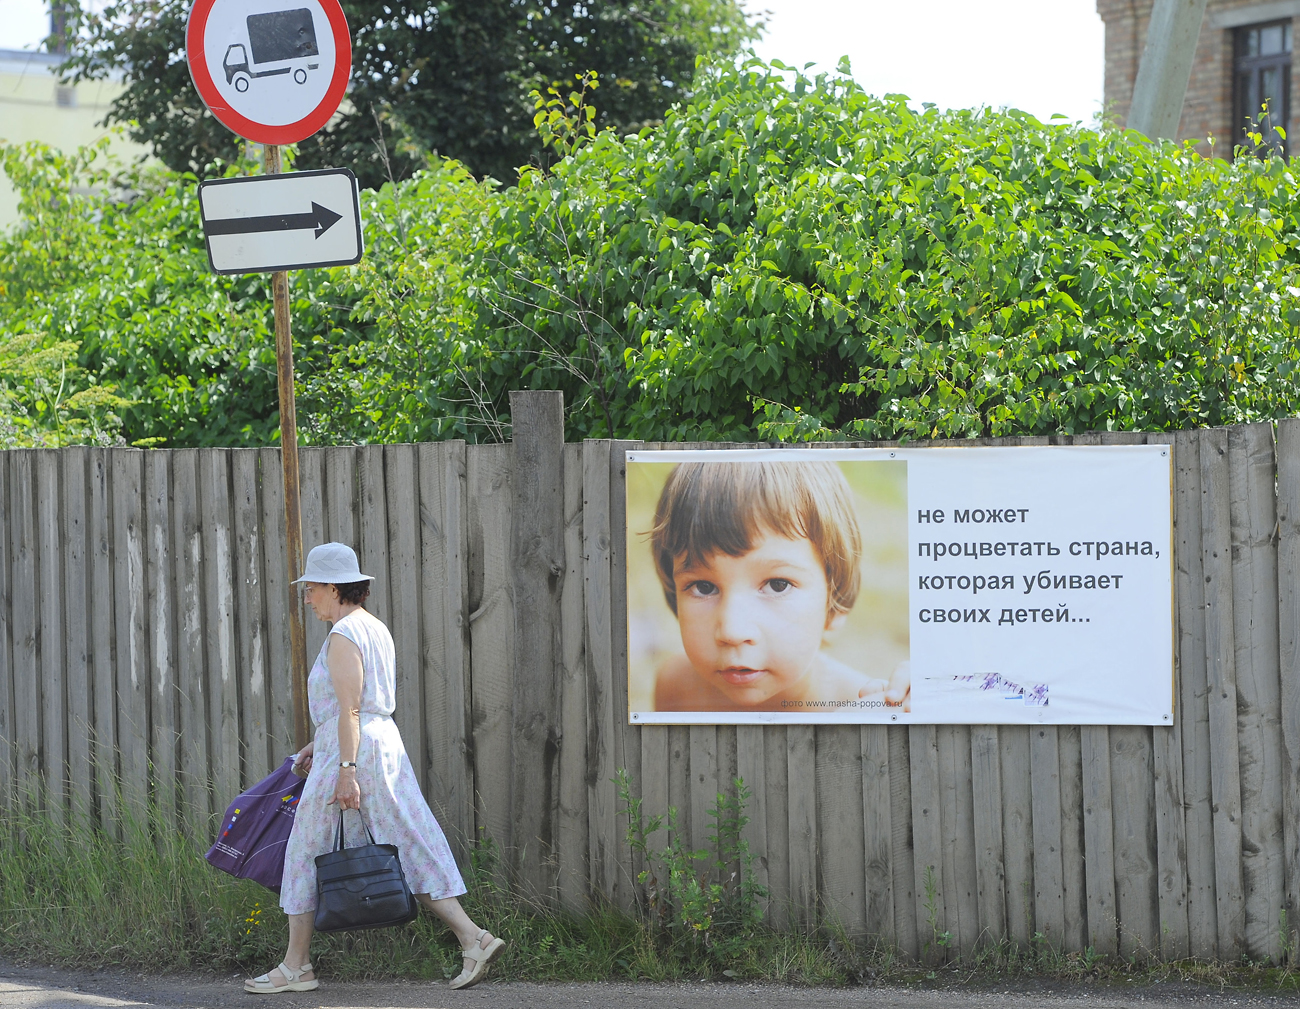 "Kein Land wird blühen, wo man eigene Kinder umbringt", steht auf dem Plakat. 